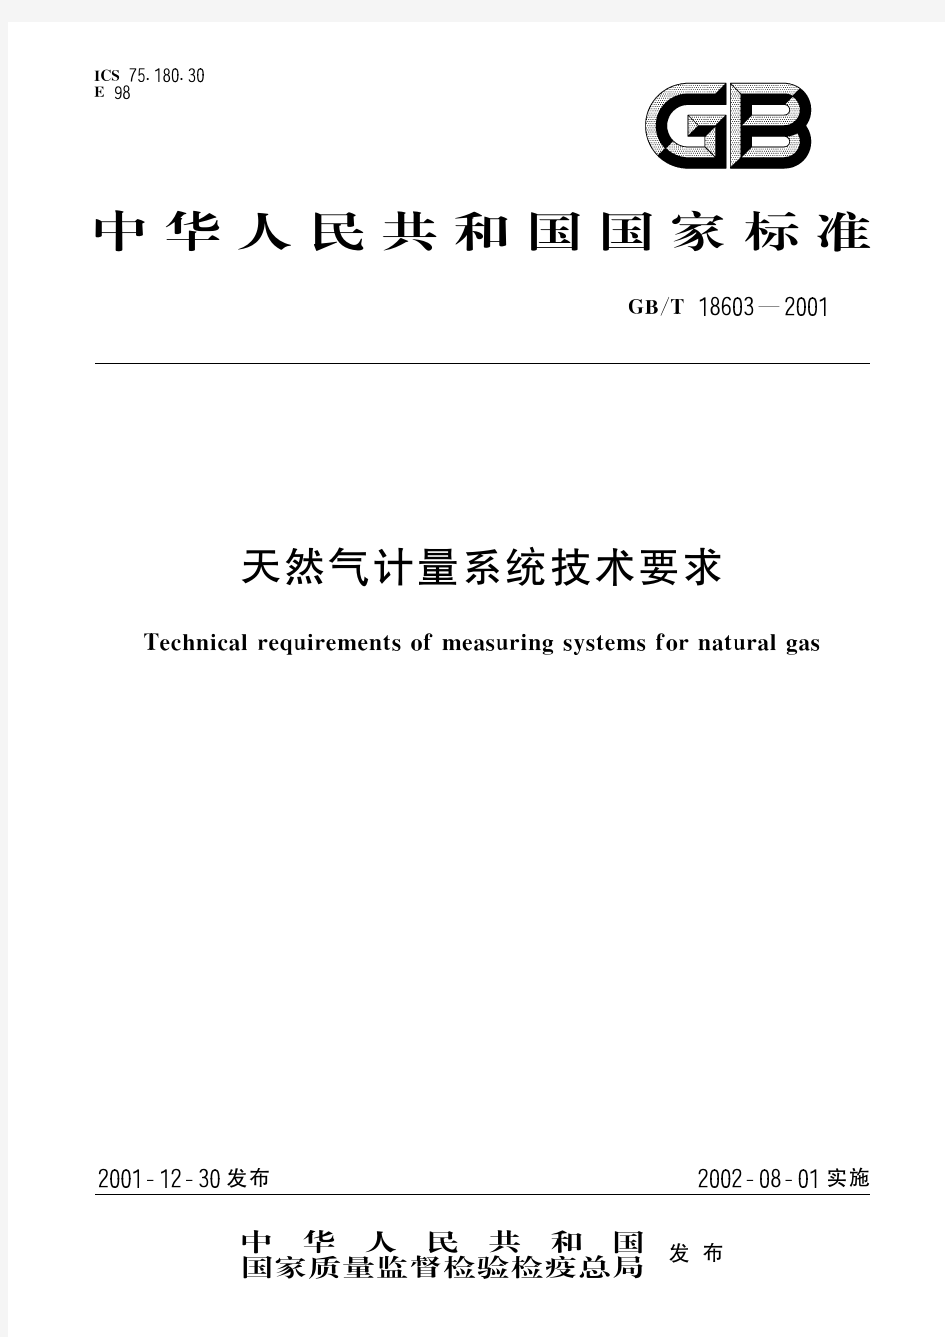 天然气计量系统技术要求(标准状态：被代替)